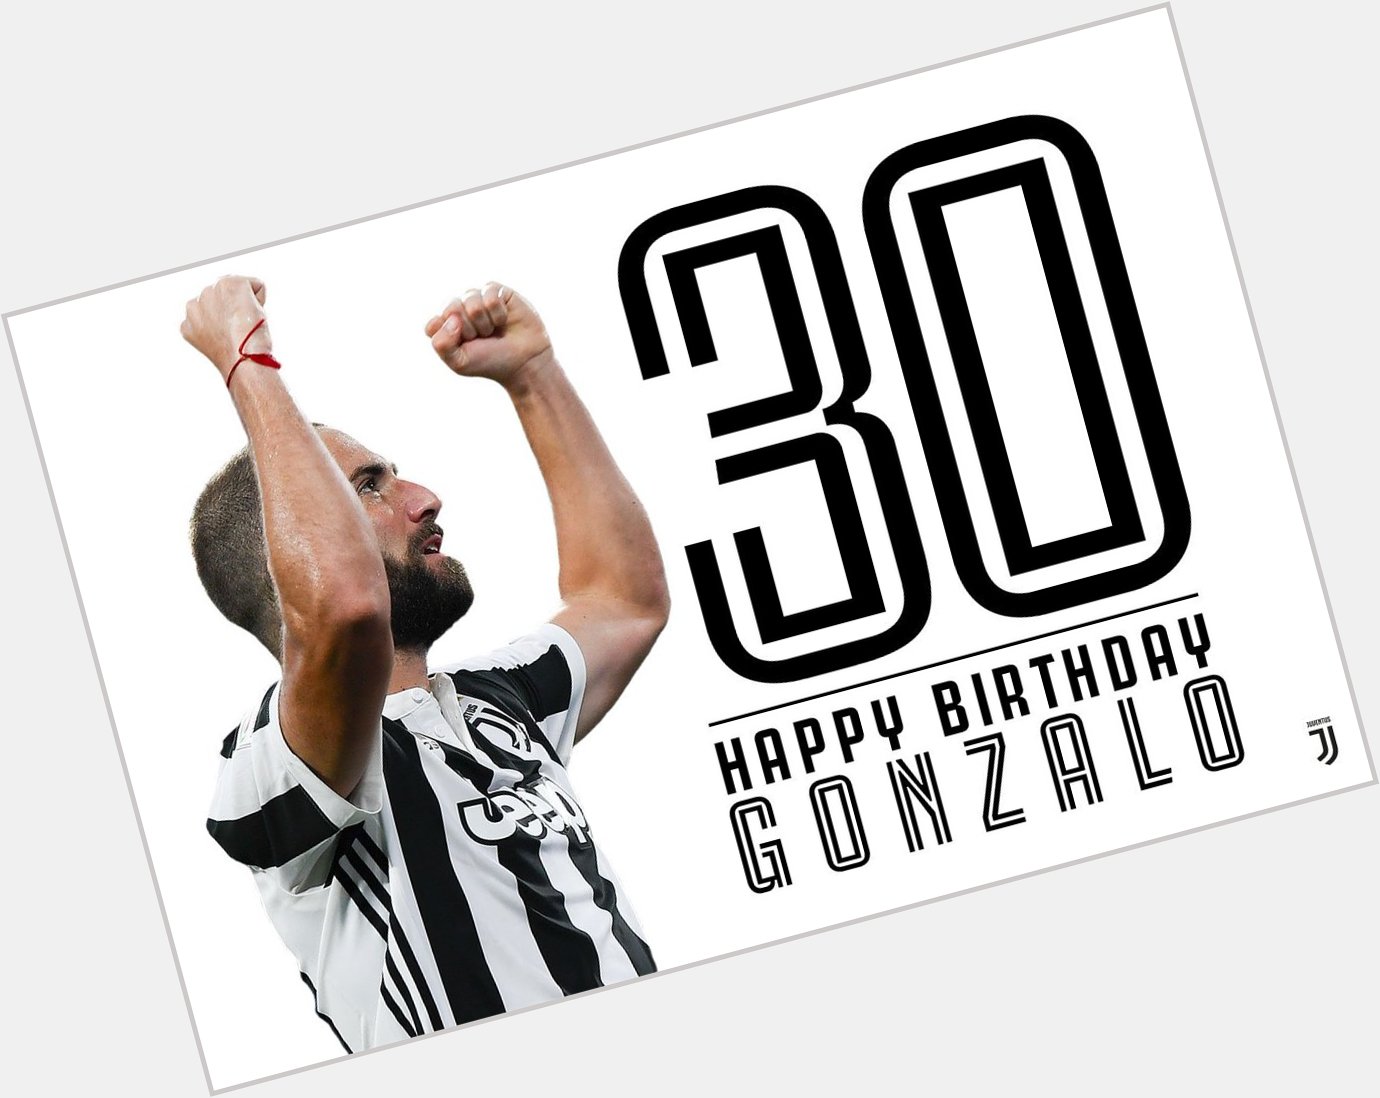 Event:Happy Birthday, Gonzalo  